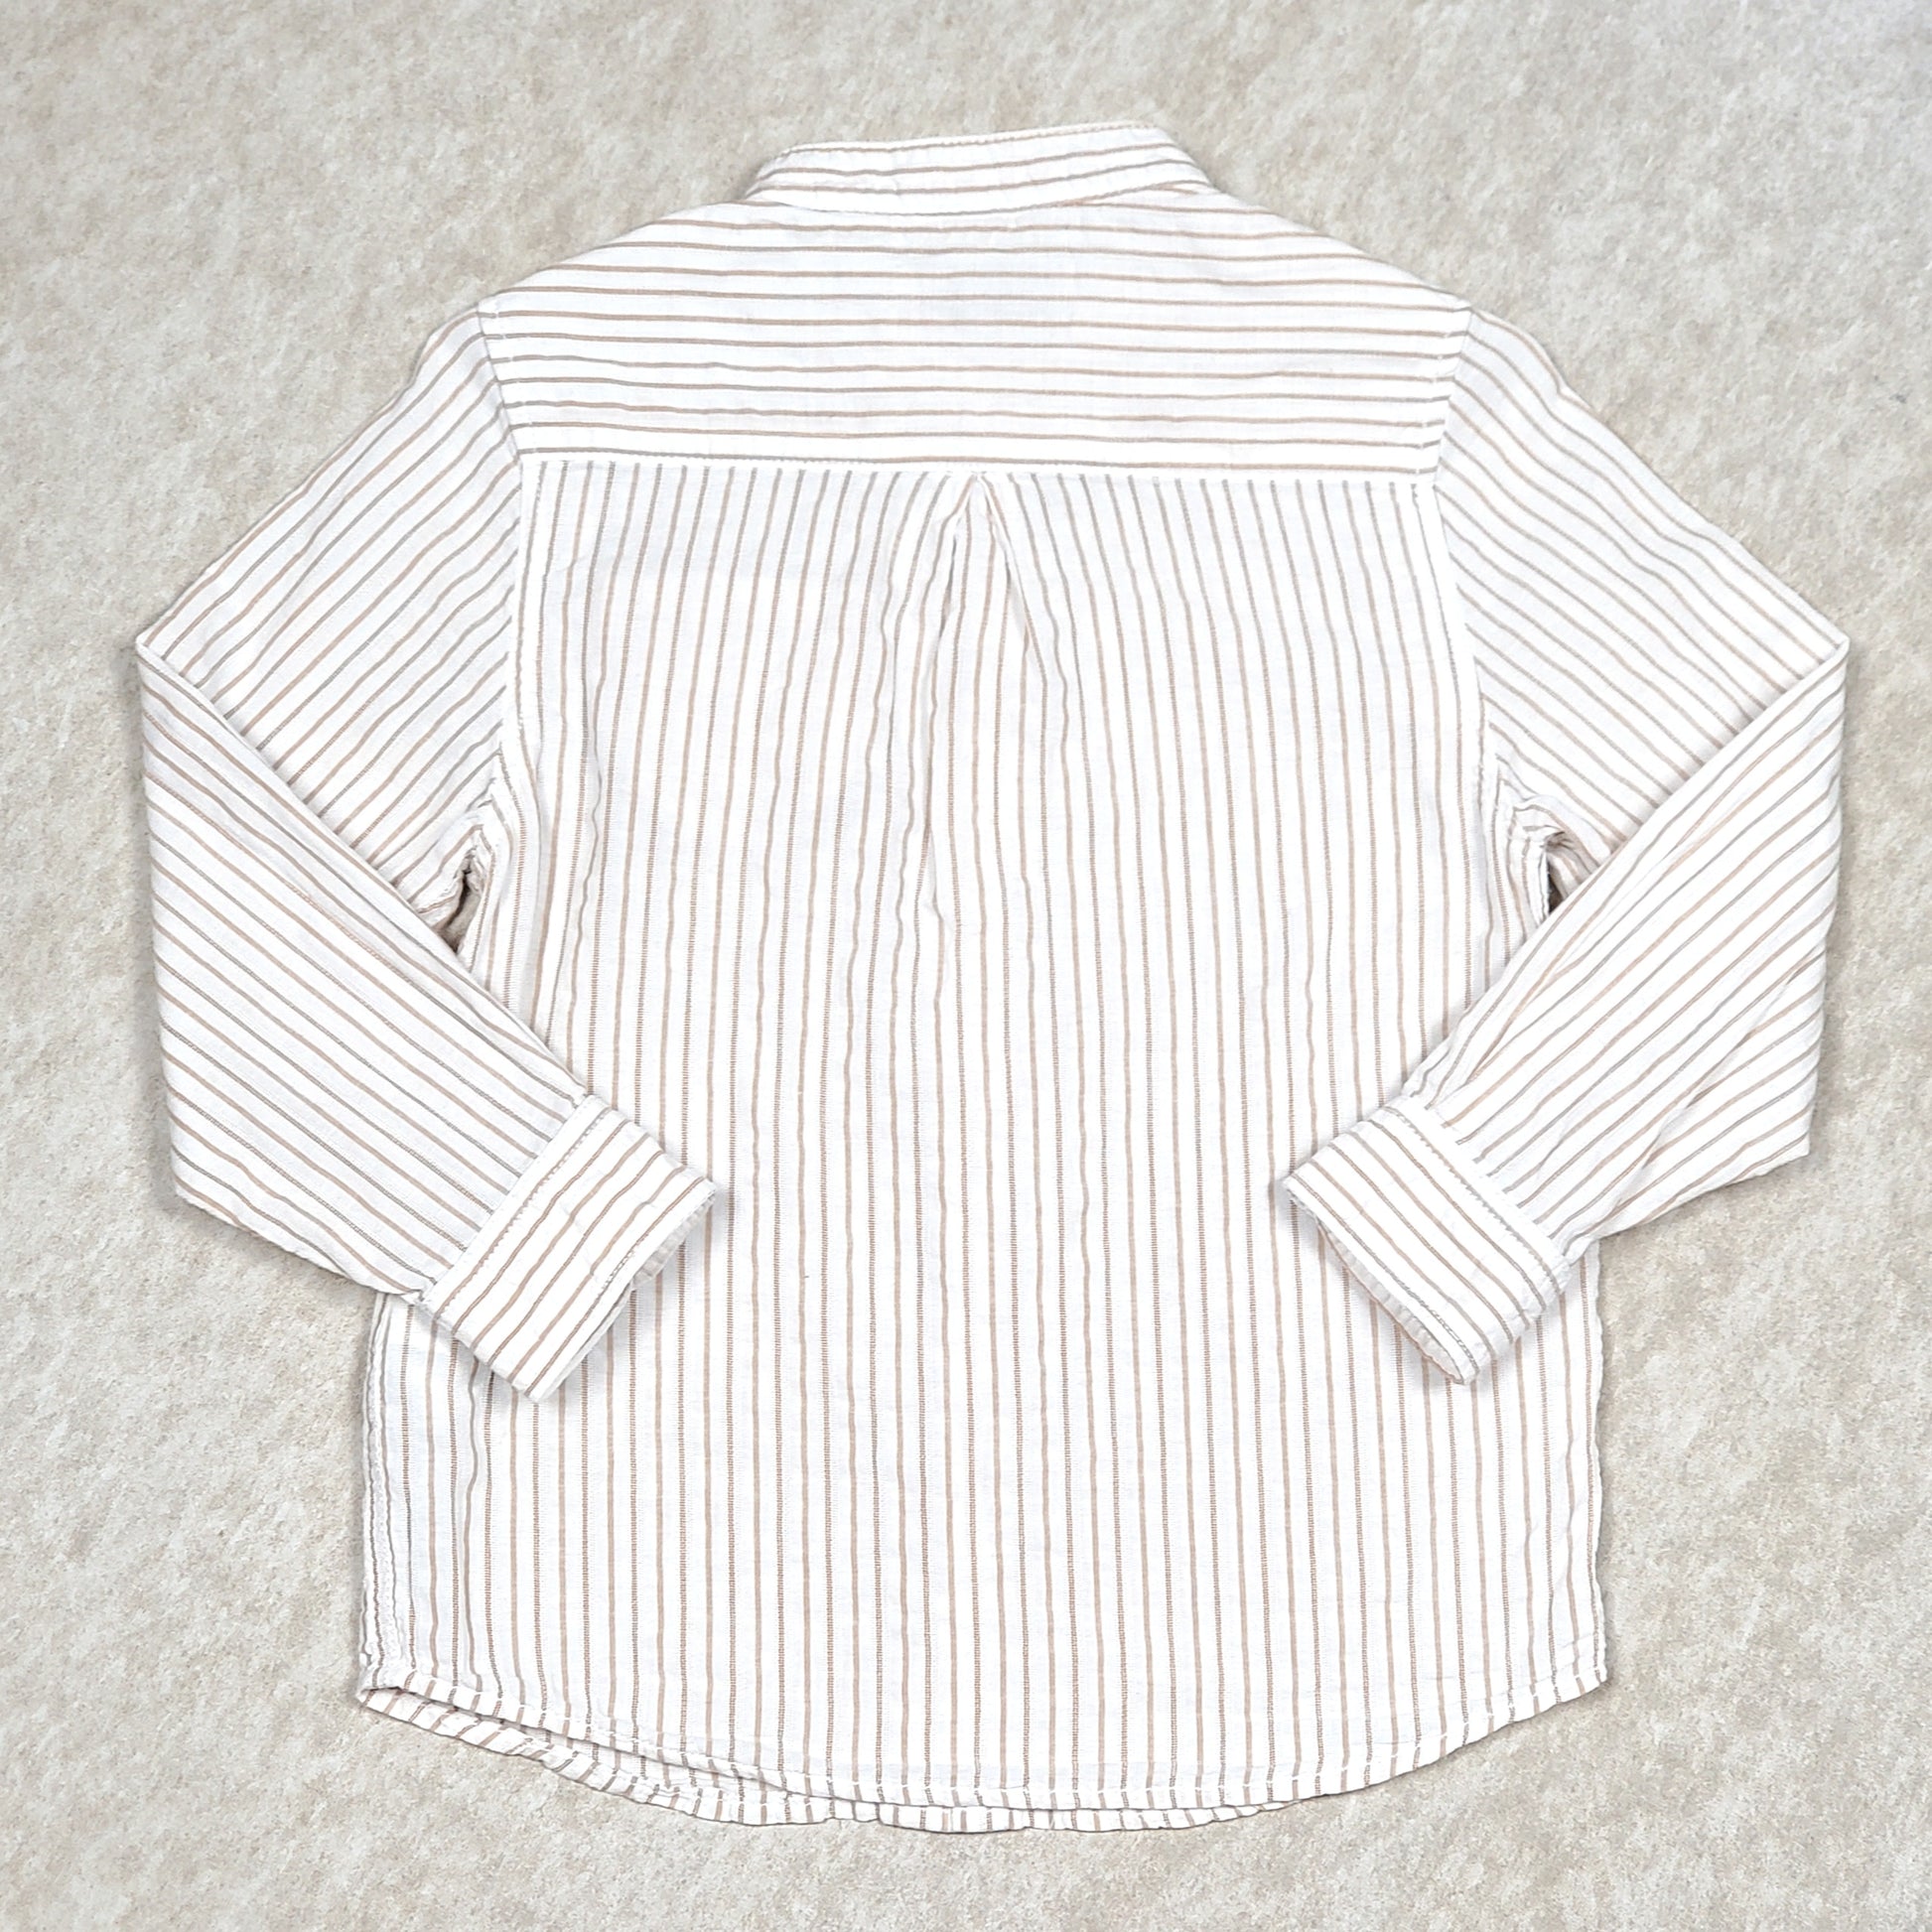 Used Zara Boys White Tan Striped Dress Shirt Size 4 View 2